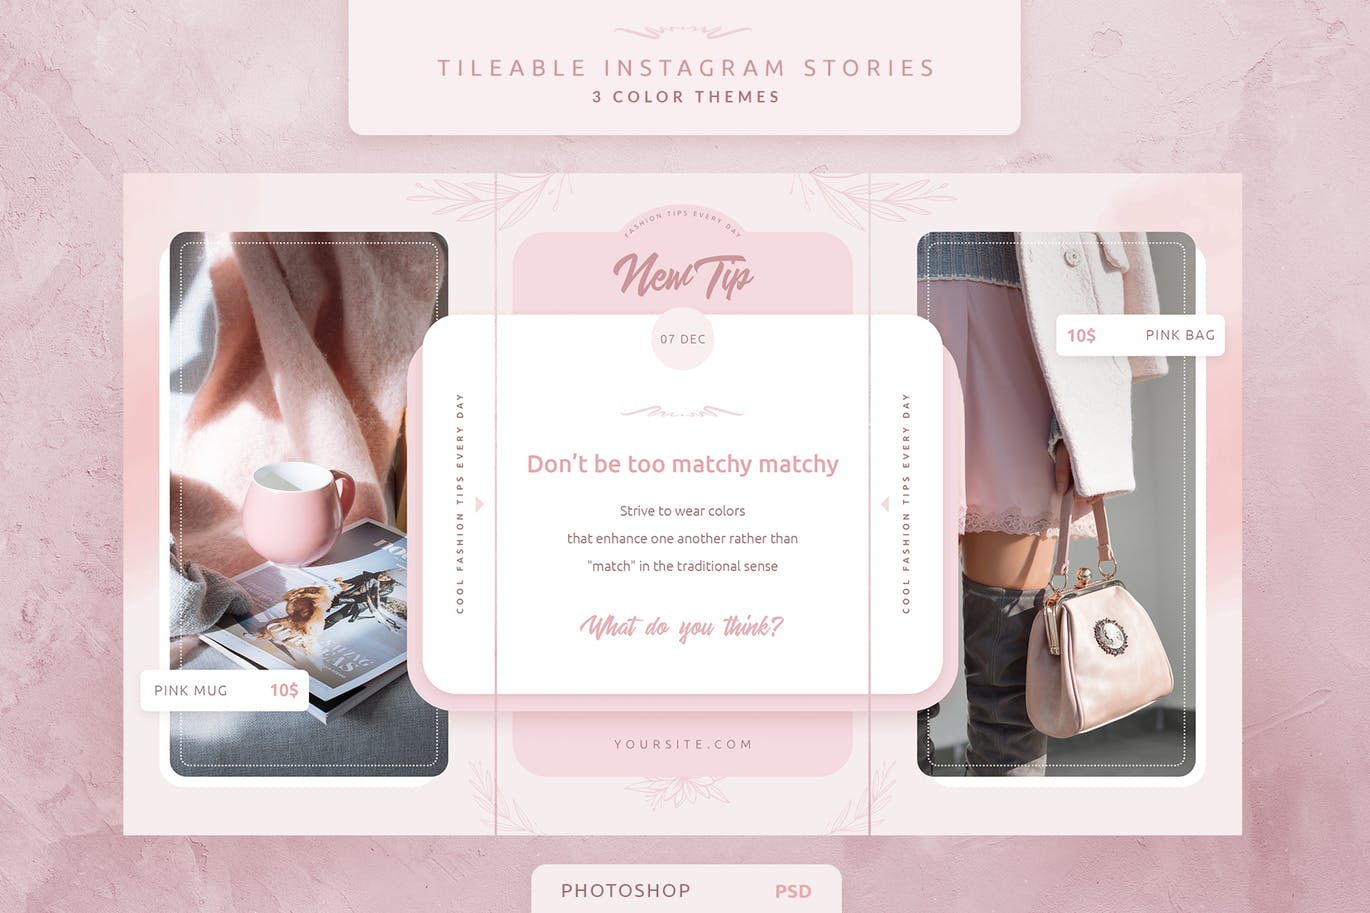 创意三列式Instagram社交品牌故事设计模板第一素材精选 Tileable Instagram Stories插图